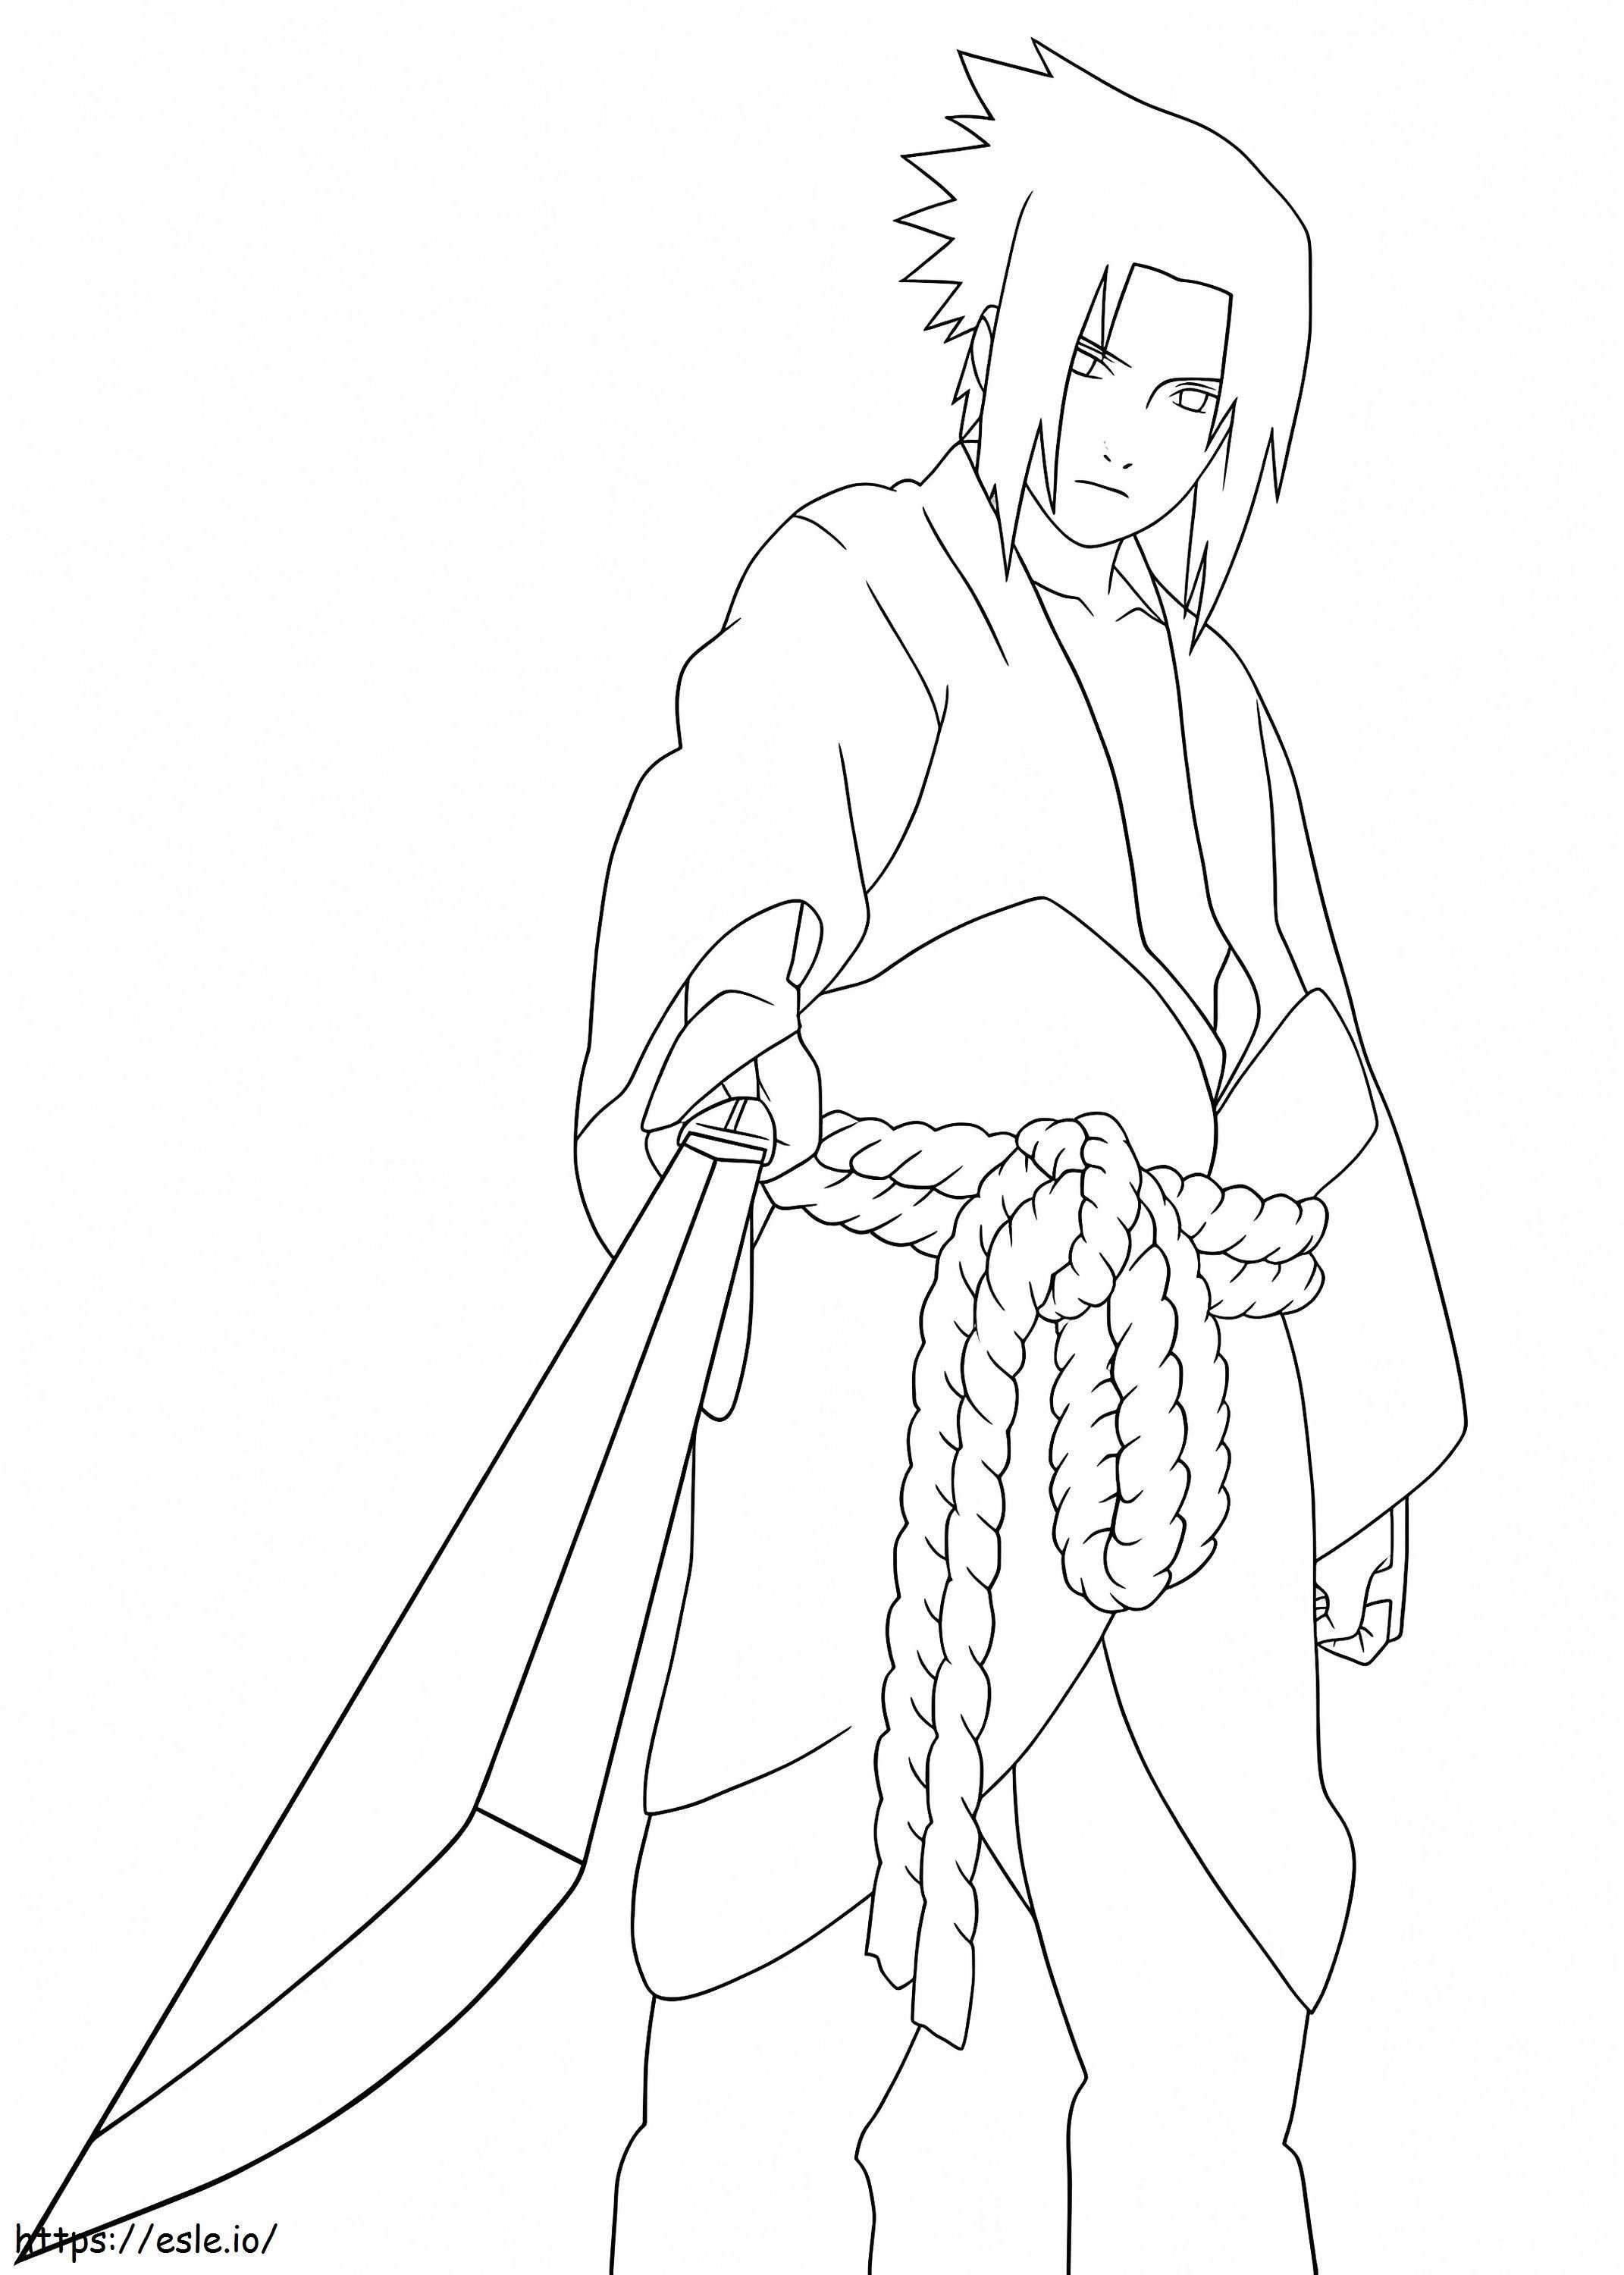  Sasuke z mieczem A4 kolorowanka